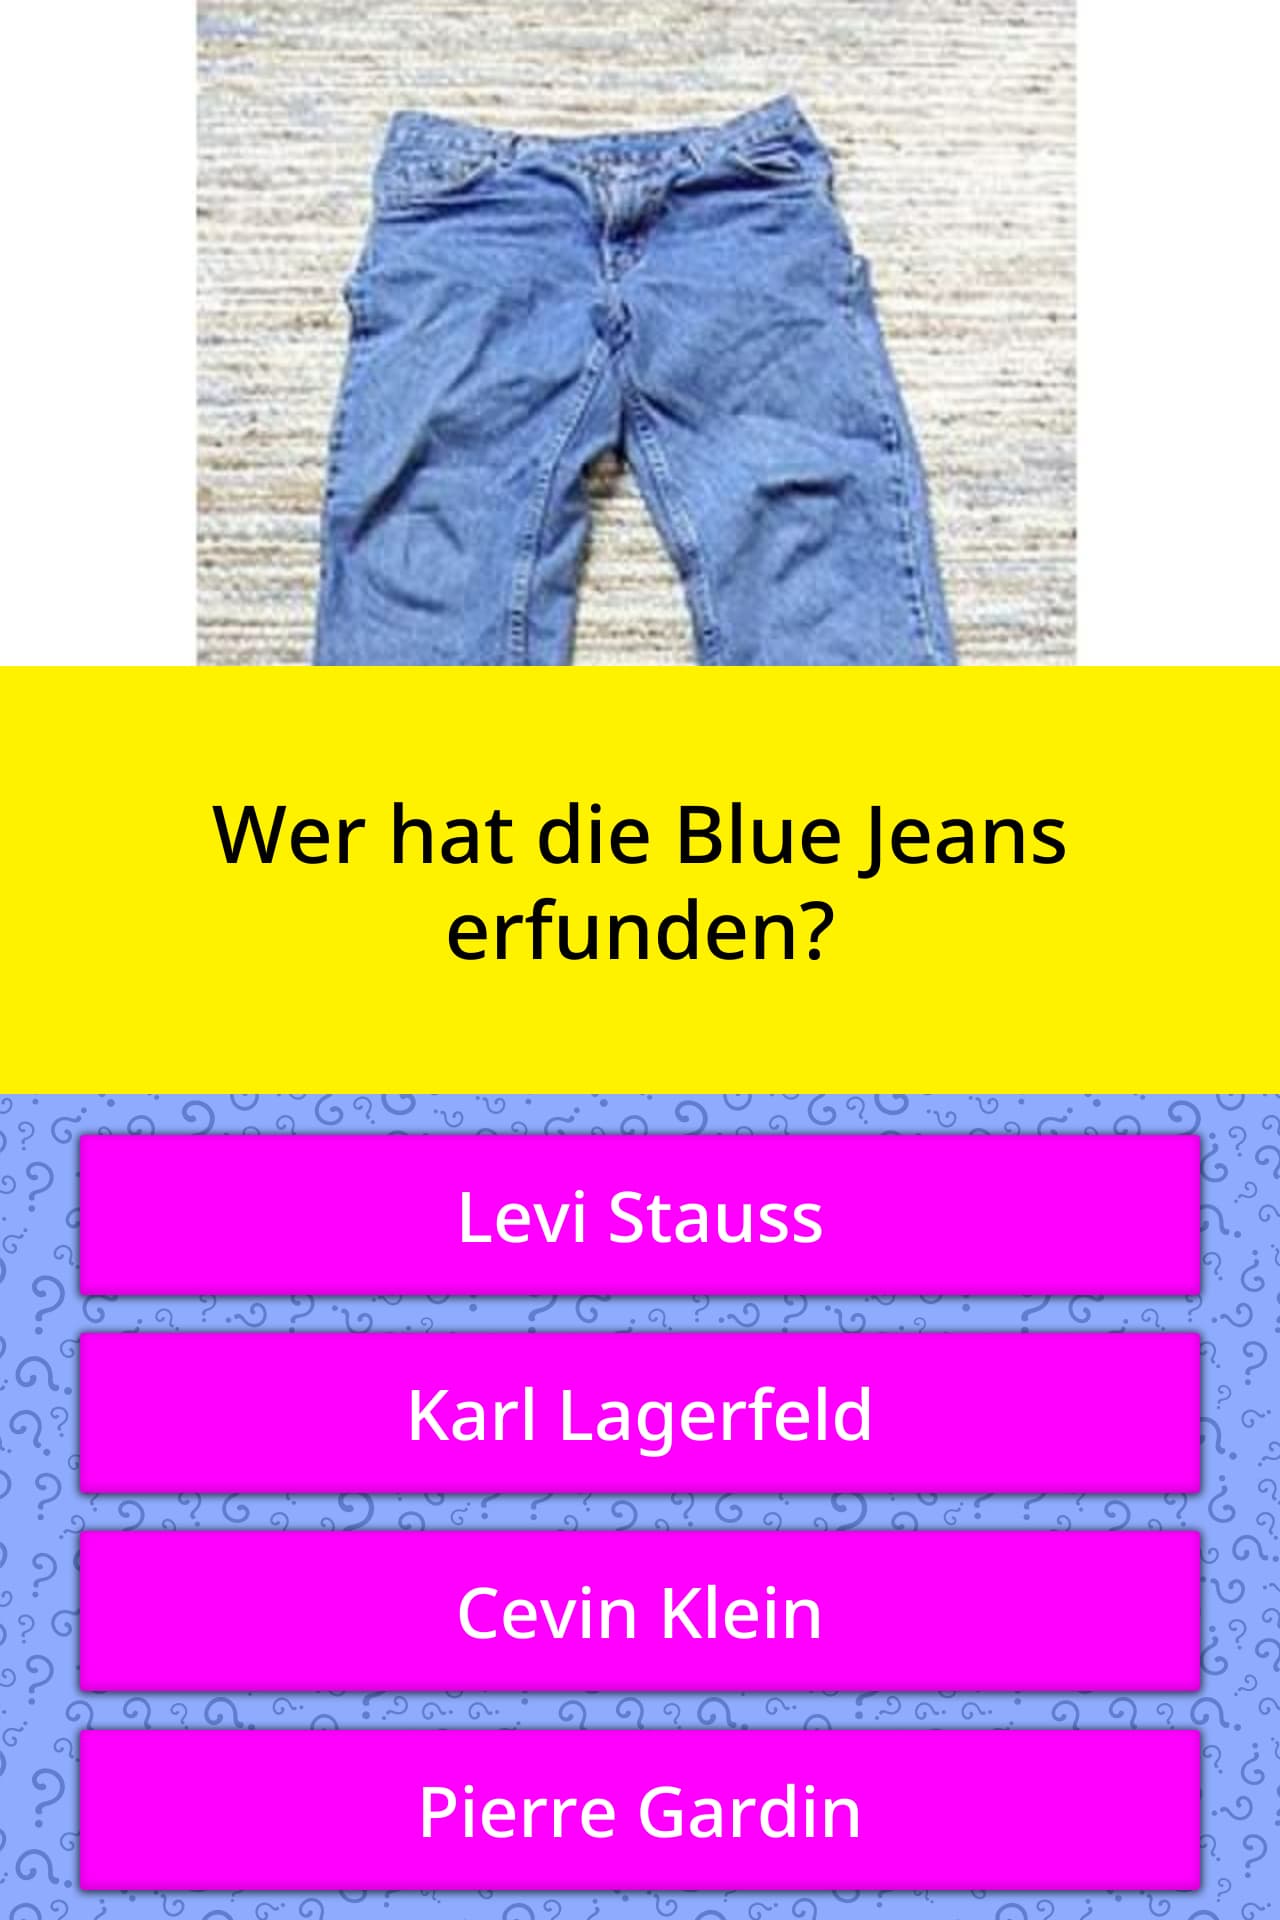 Wer hat die Blue Jeans erfunden? | Quizfragen | QuizzClub